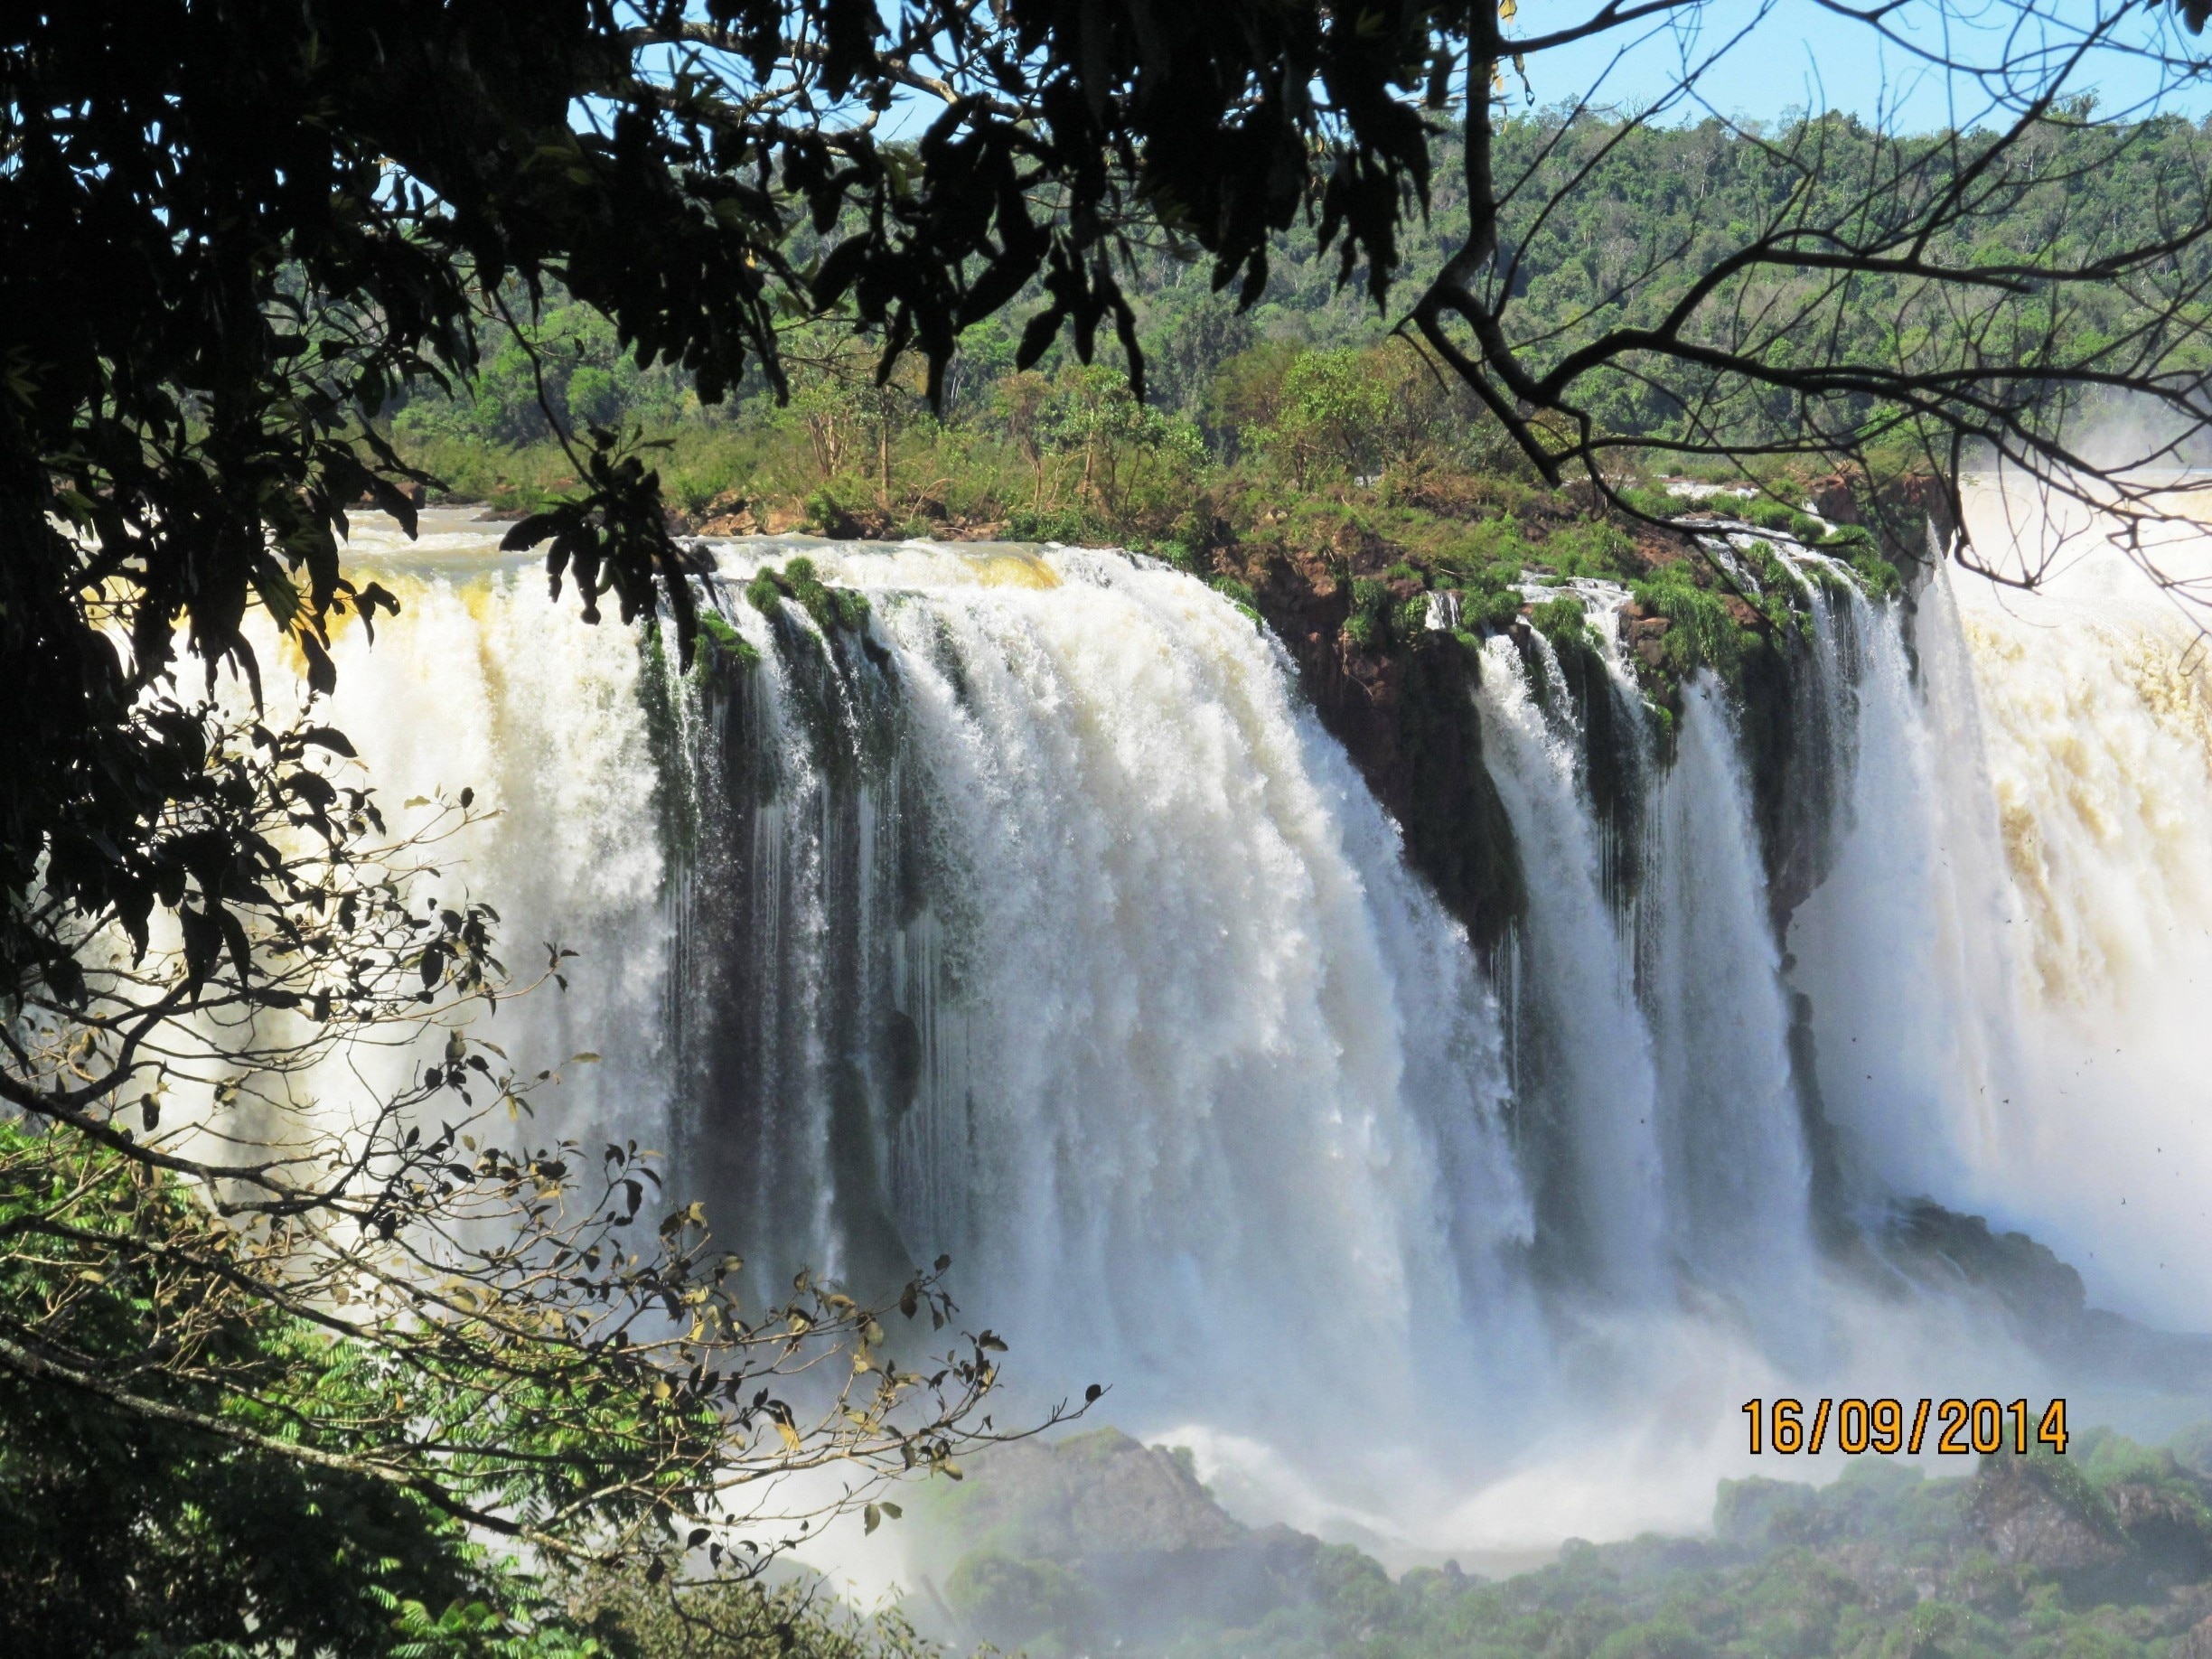 Dreamland Foz do Iguaçu Vale a Pena? Prós e Contras em 2023